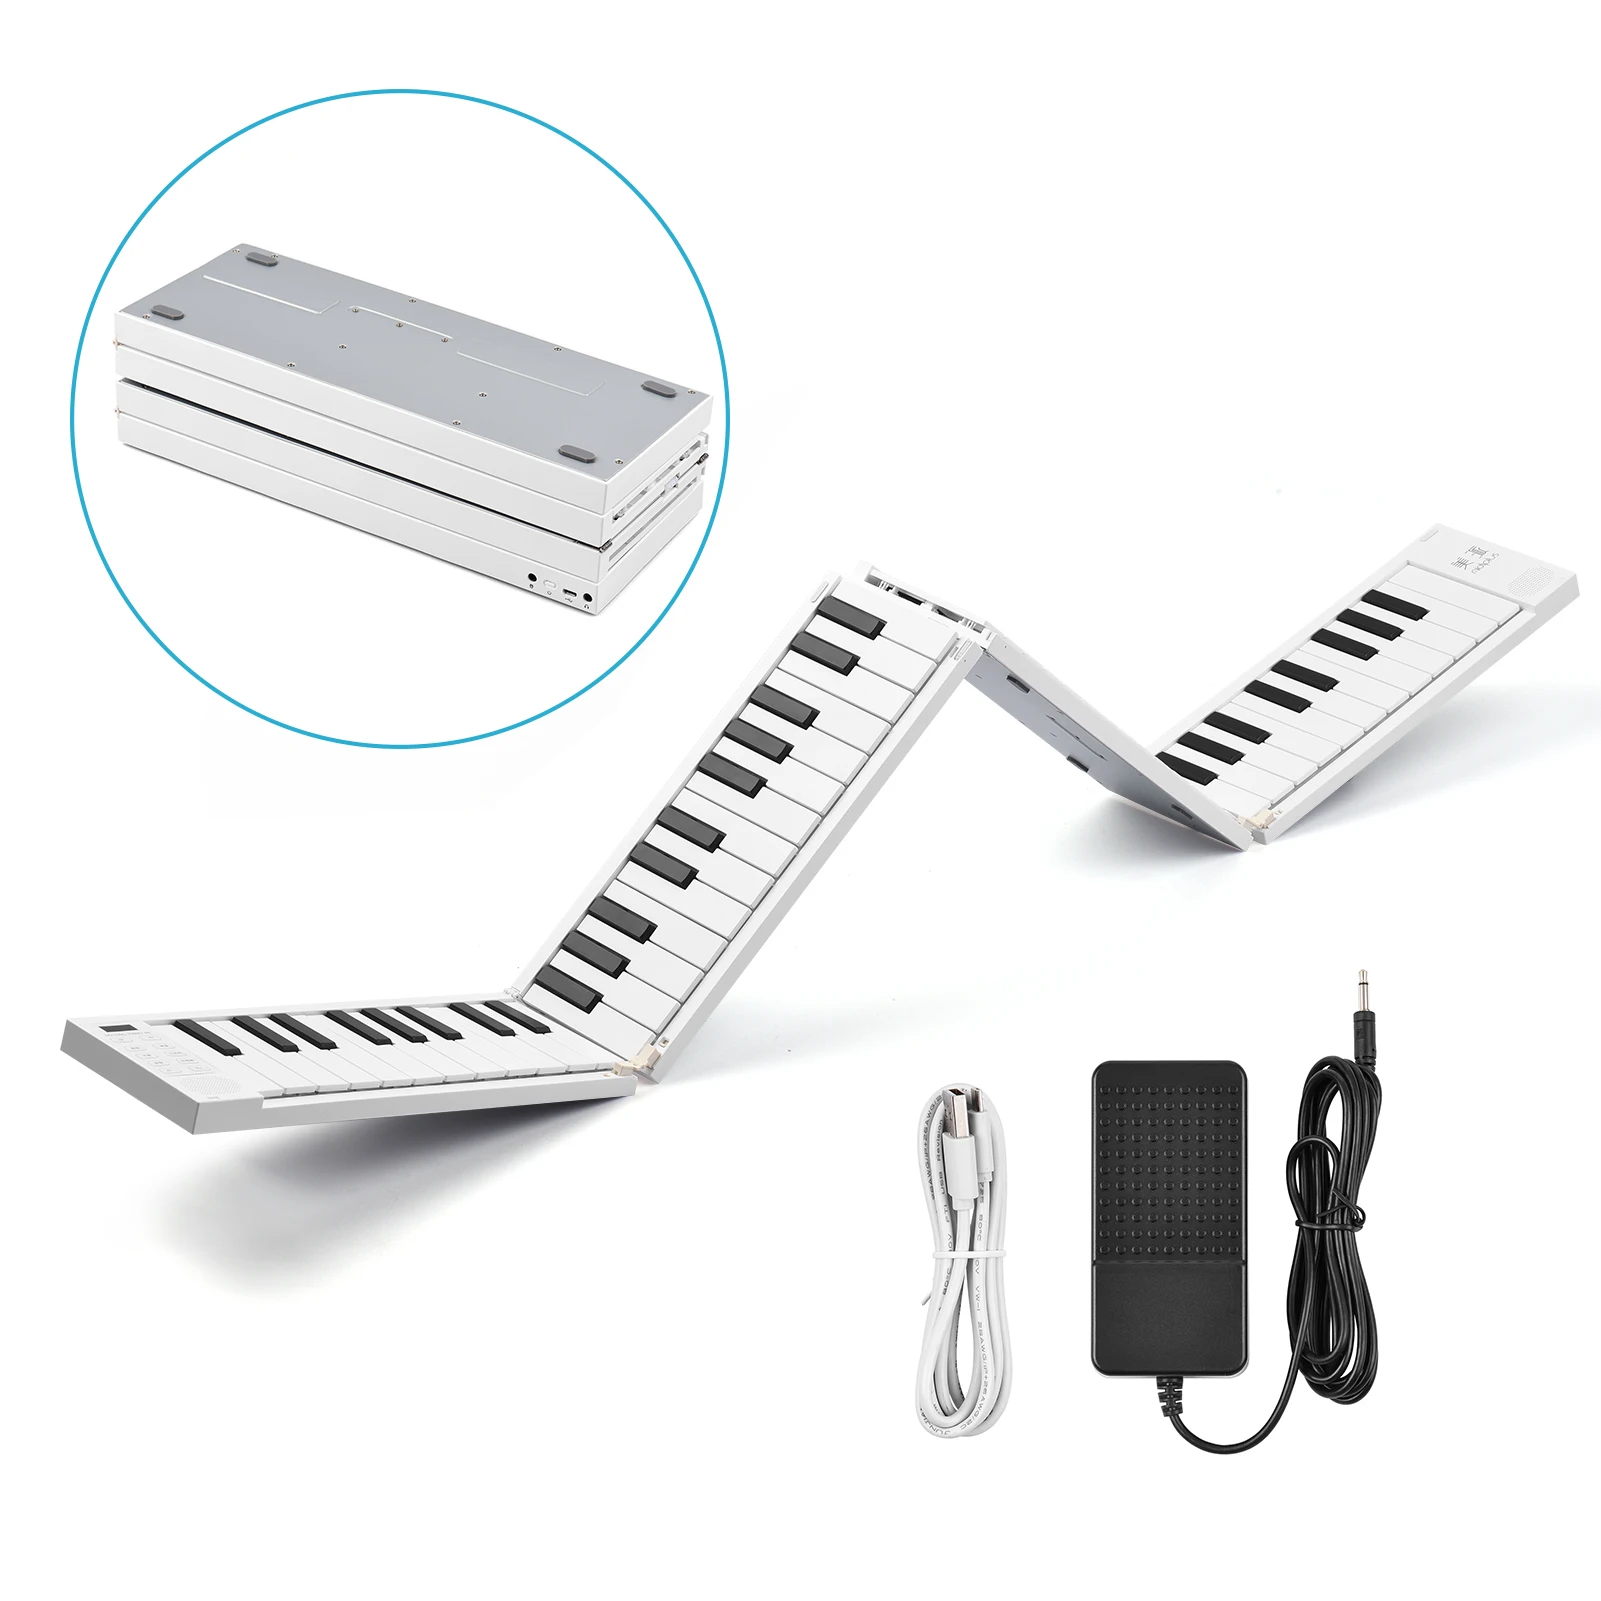 Tastiera pieghevole (pianoforte) pieghevole portatile 130 cm + 88 tasti +  BT + Li-ion + altoparlanti stereo